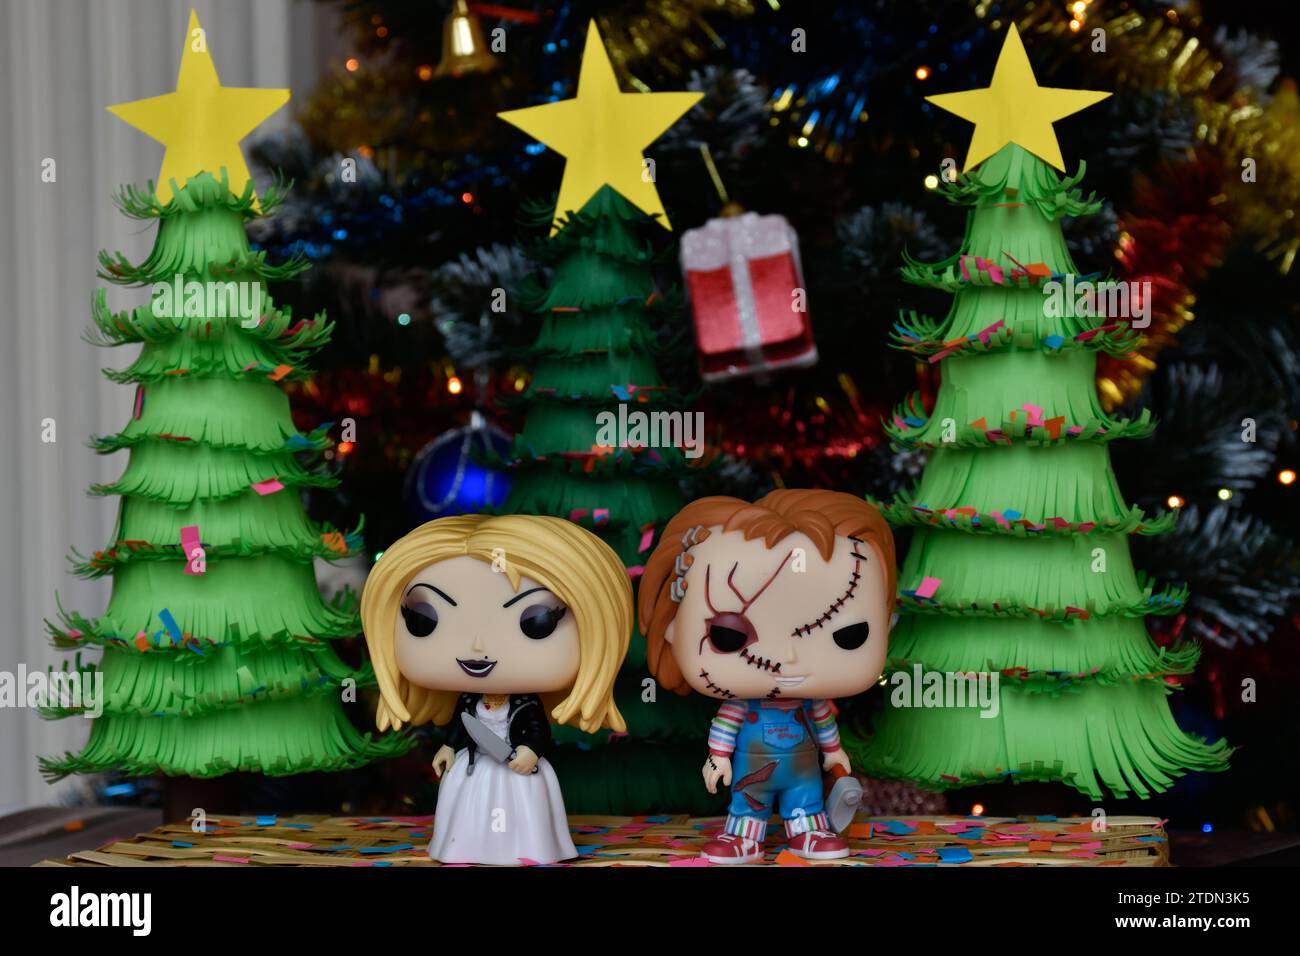 Funko Pop action figure di Chucky e Tiffany sposa di Chucky del franchise horror Child's Play. Alberi di Natale in carta fatti a mano, decorazioni natalizie. Foto Stock